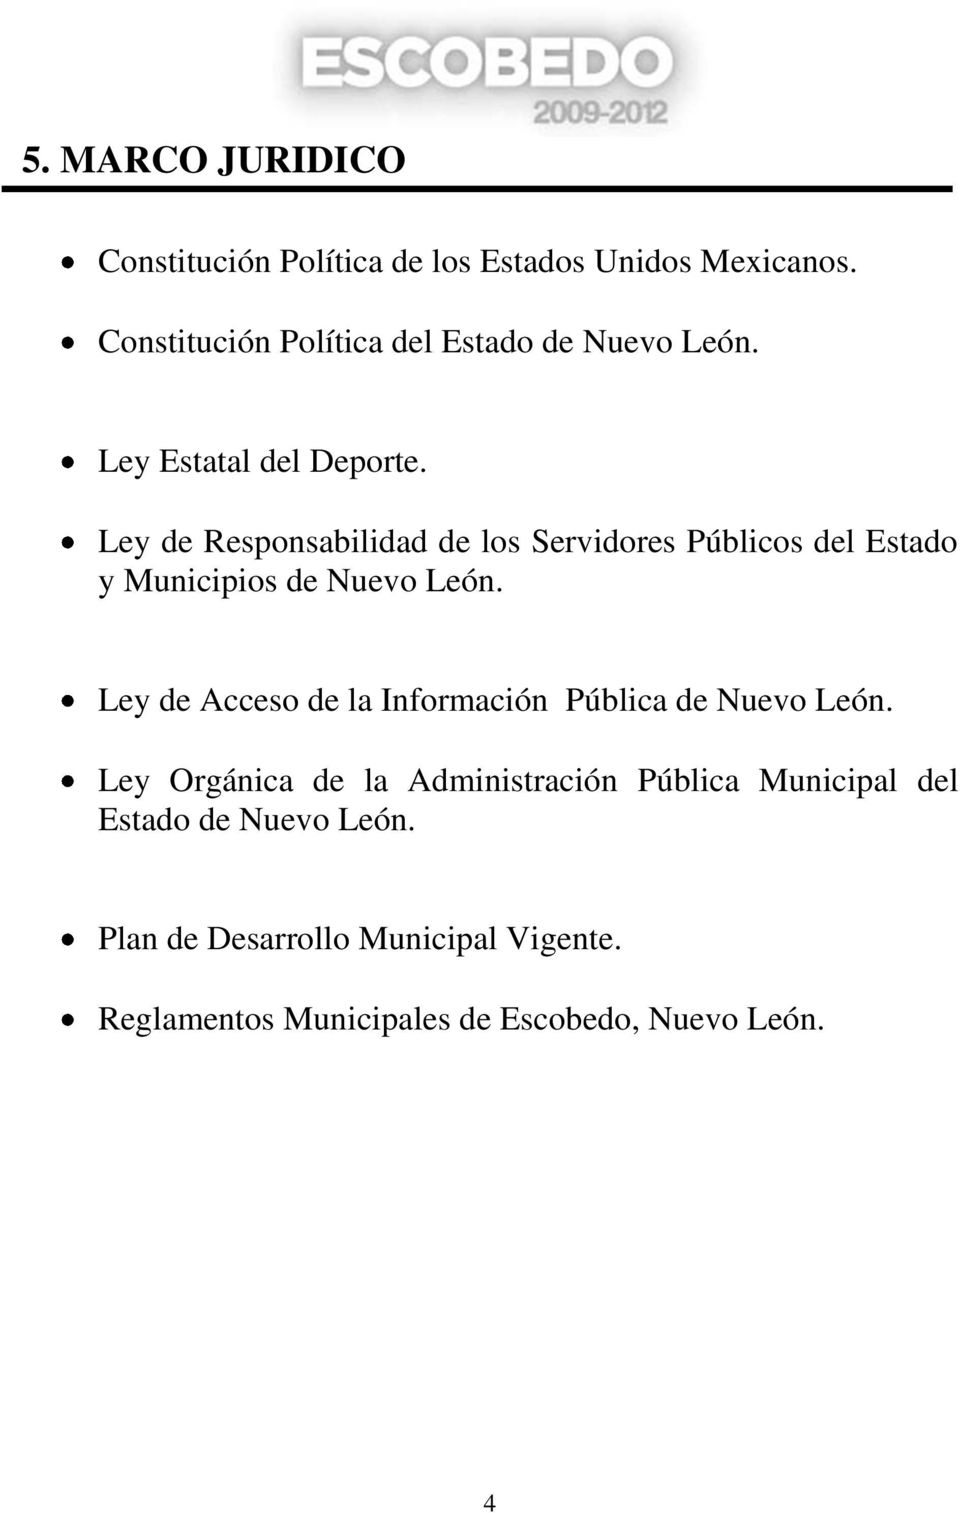 Ley de Responsabilidad de los Servidores Públicos del Estado y Municipios de Nuevo León.